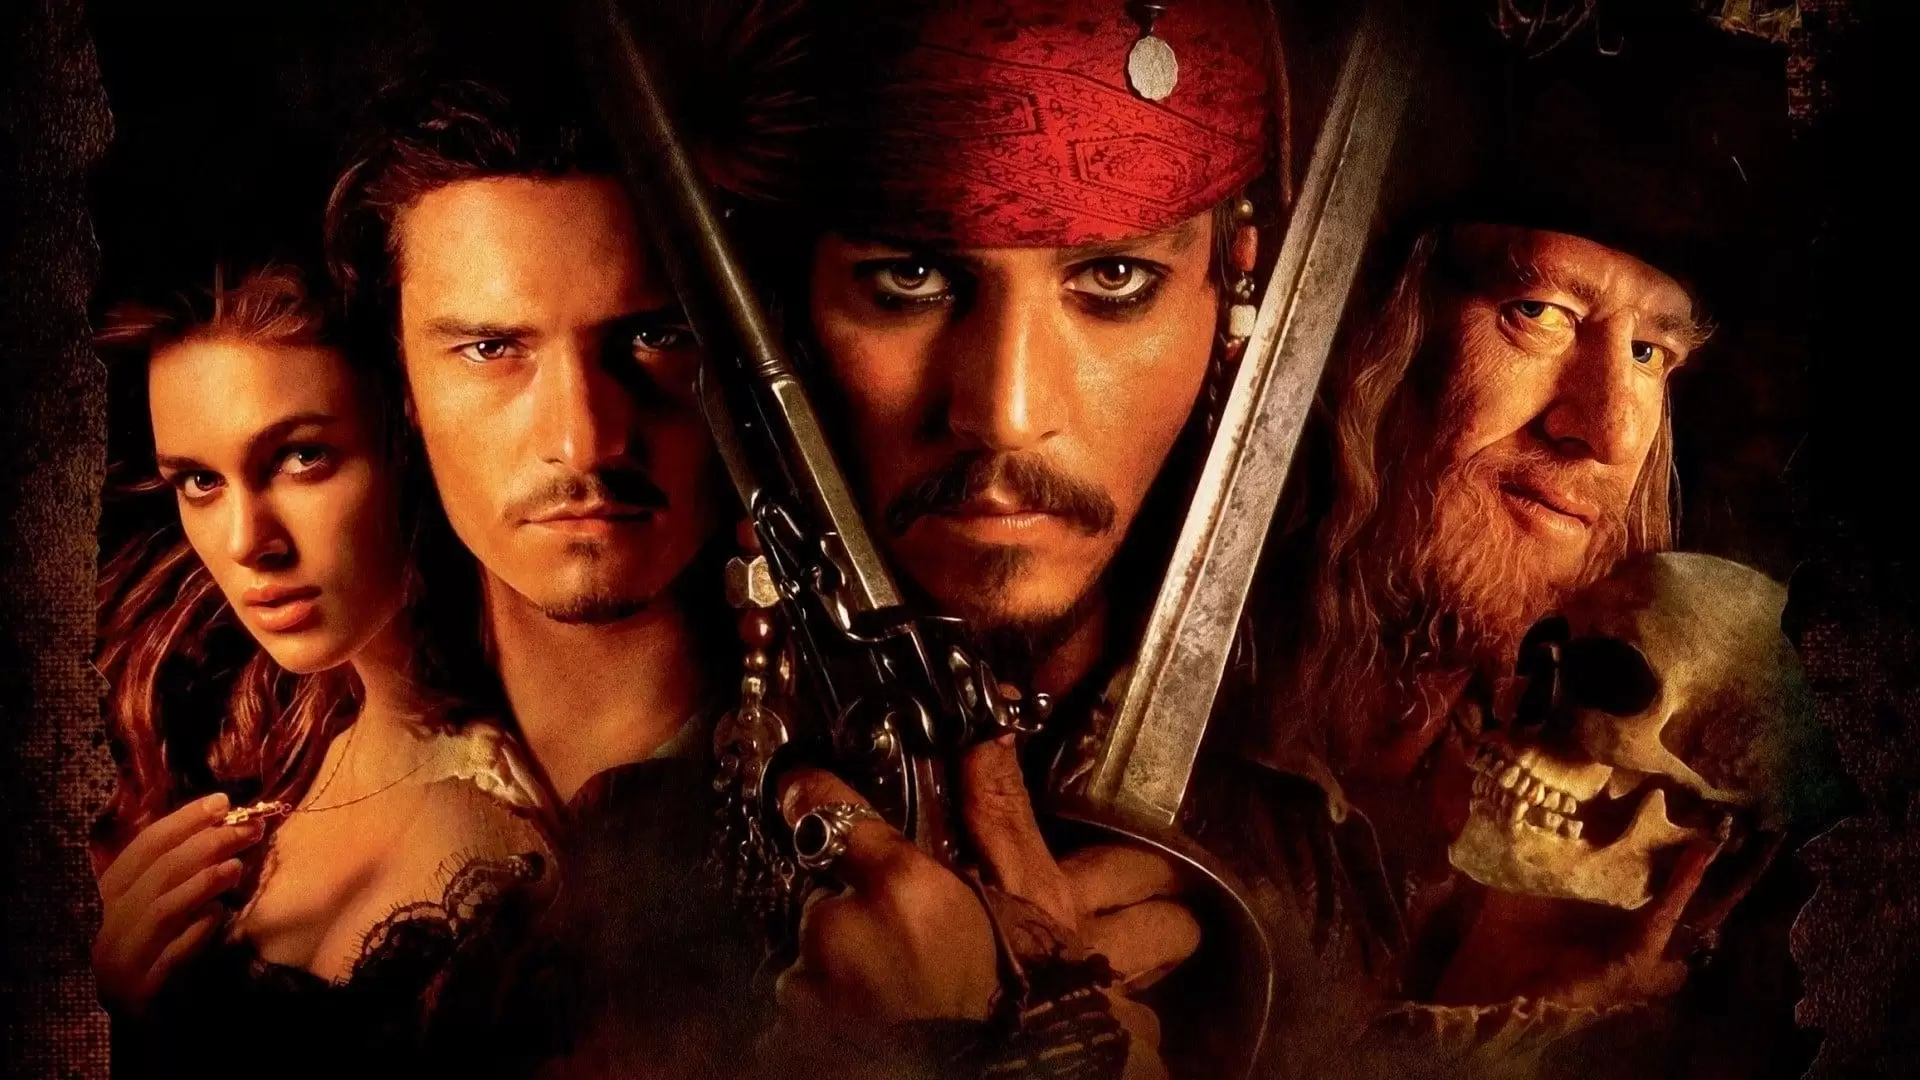 دانلود فیلم Pirates of the Caribbean: The Curse of the Black Pearl 2003 (دزدان دریایی کارائیب: طلسم مروارید سیاه) با زیرنویس فارسی و تماشای آنلاین